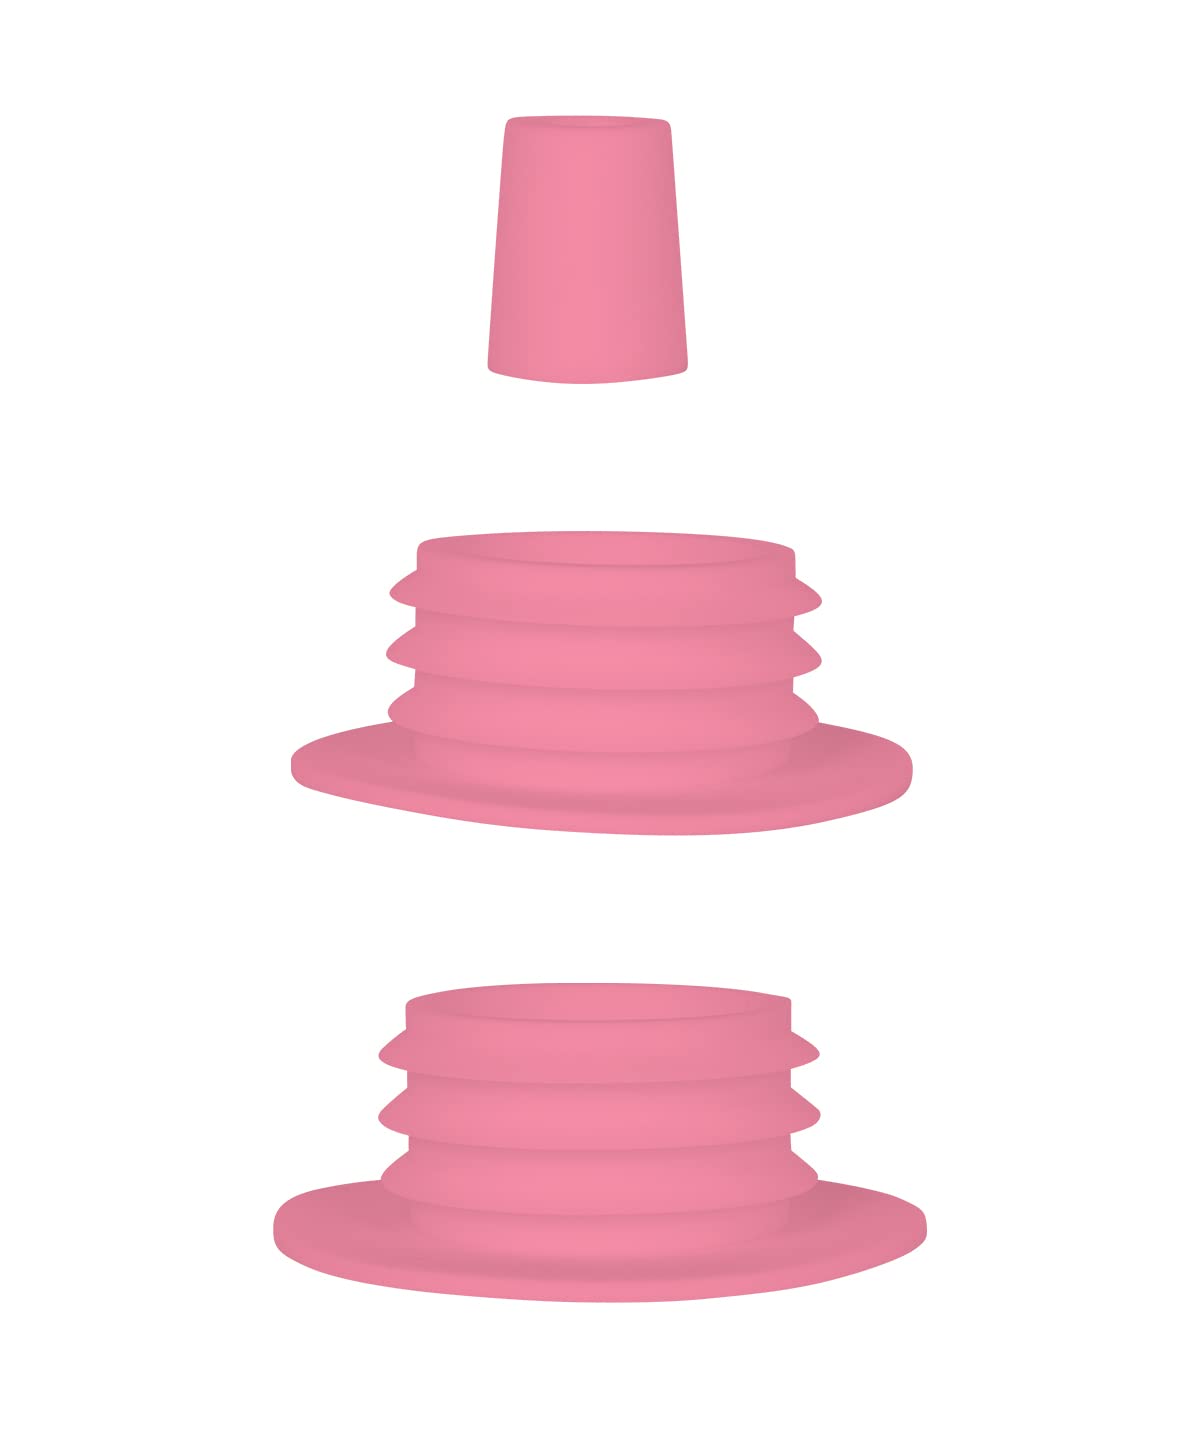 MOZE Dichtungsset - Pink - 3er Set - Dichtungen mit unterschiedlichen Größen - leichte Reinigung und Spülmaschinen kompatibel - Farblich passend Produkten - benutzbar für alle Steckbowls von Moze